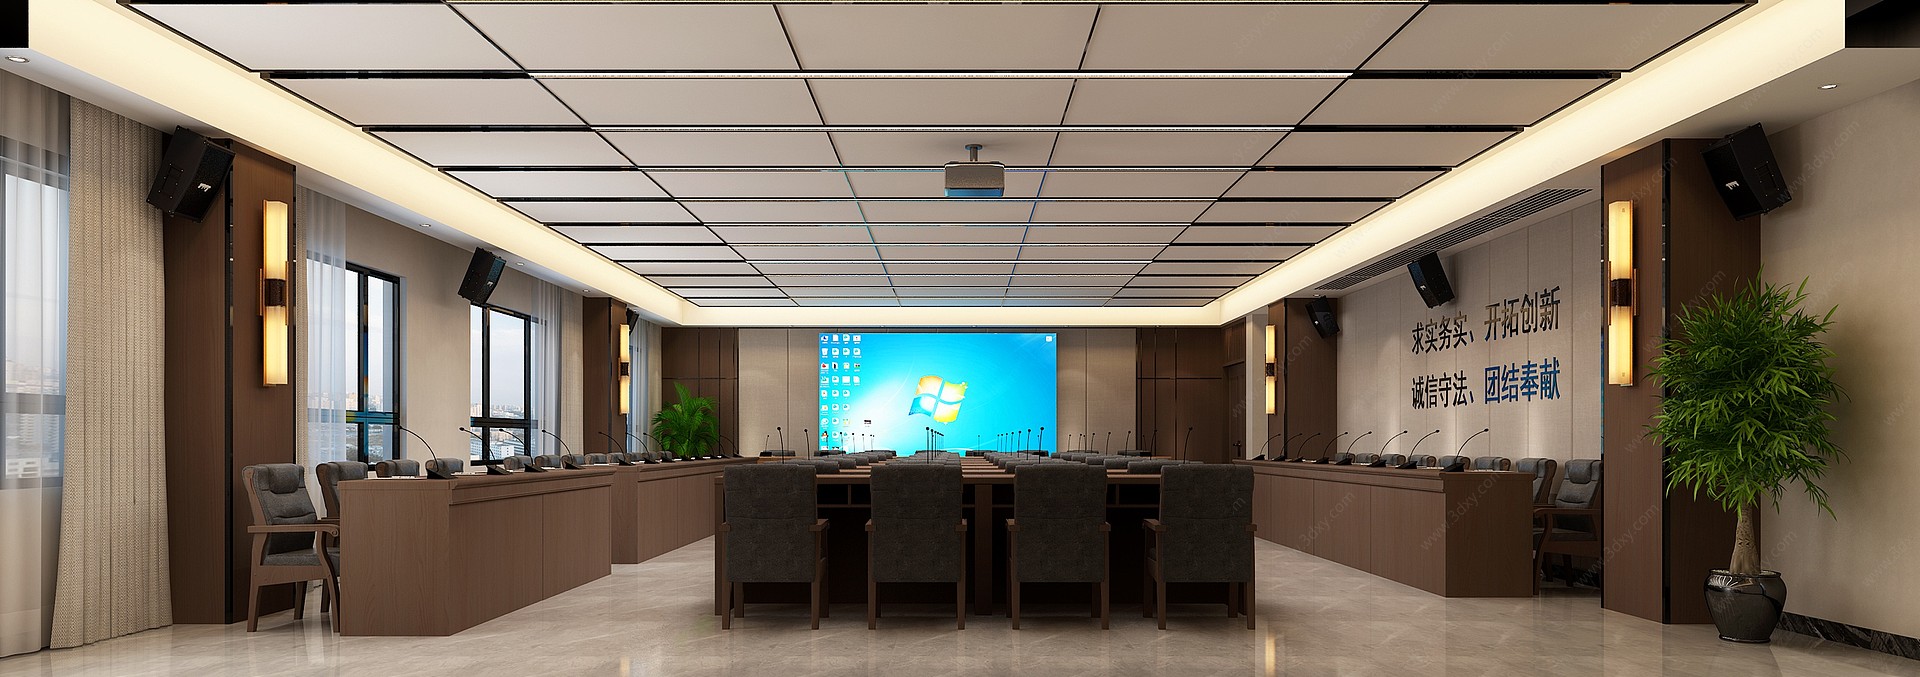 现代会议室接待室3D模型